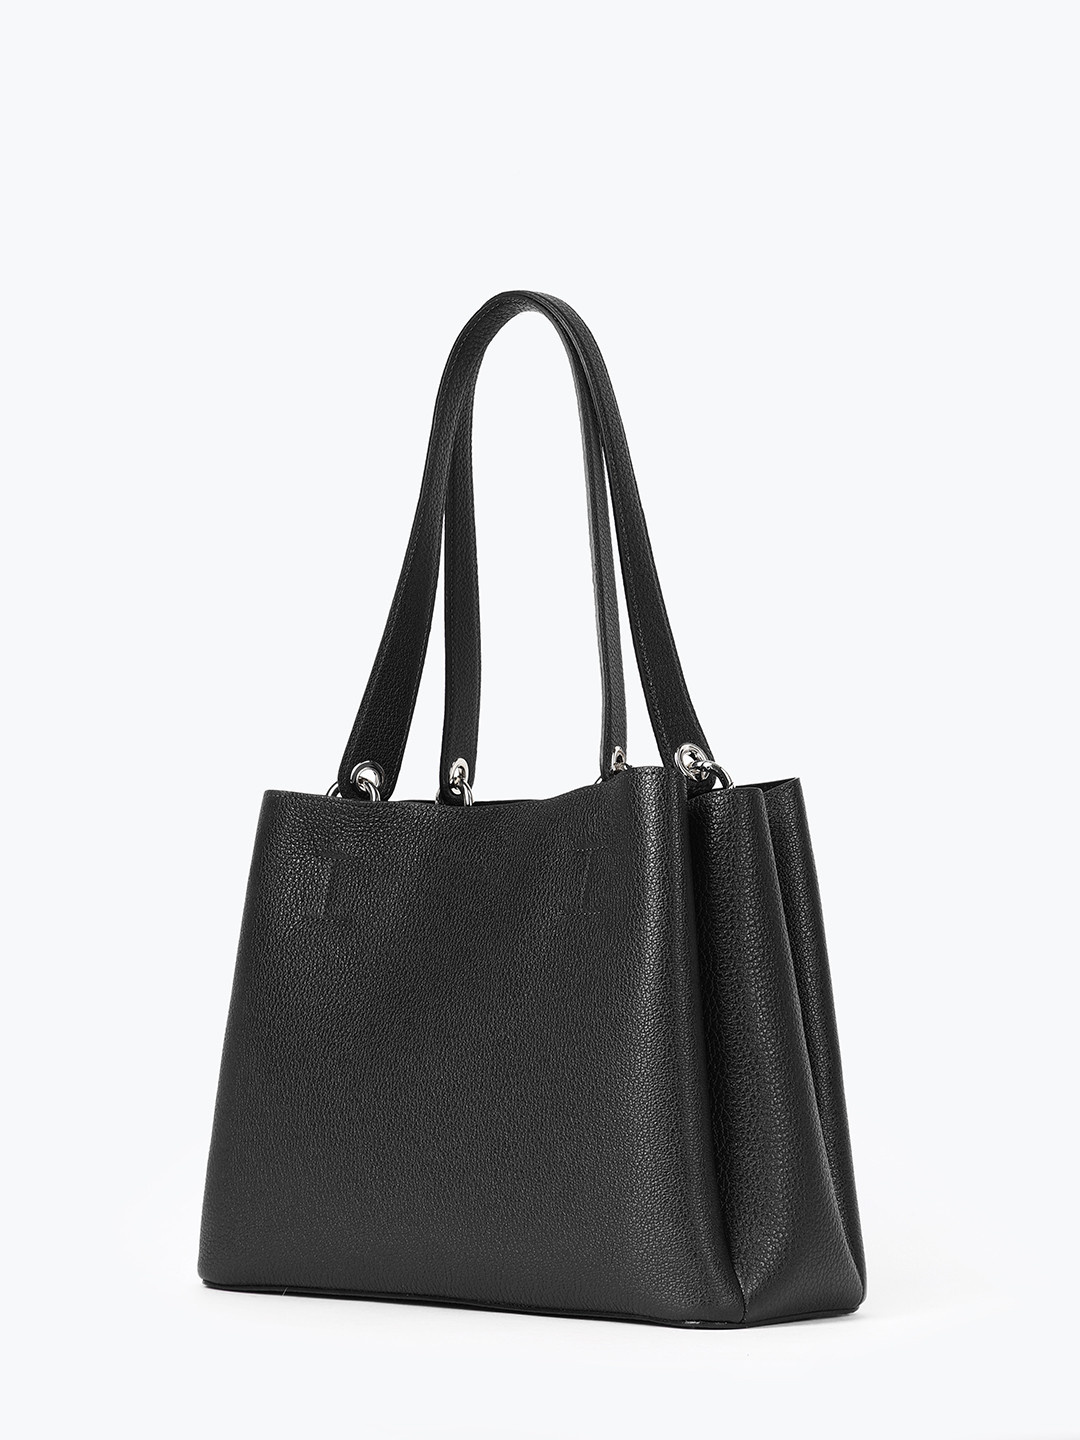 Фото Женская сумка-тоут черного цвета с тремя отделениями Классические сумки